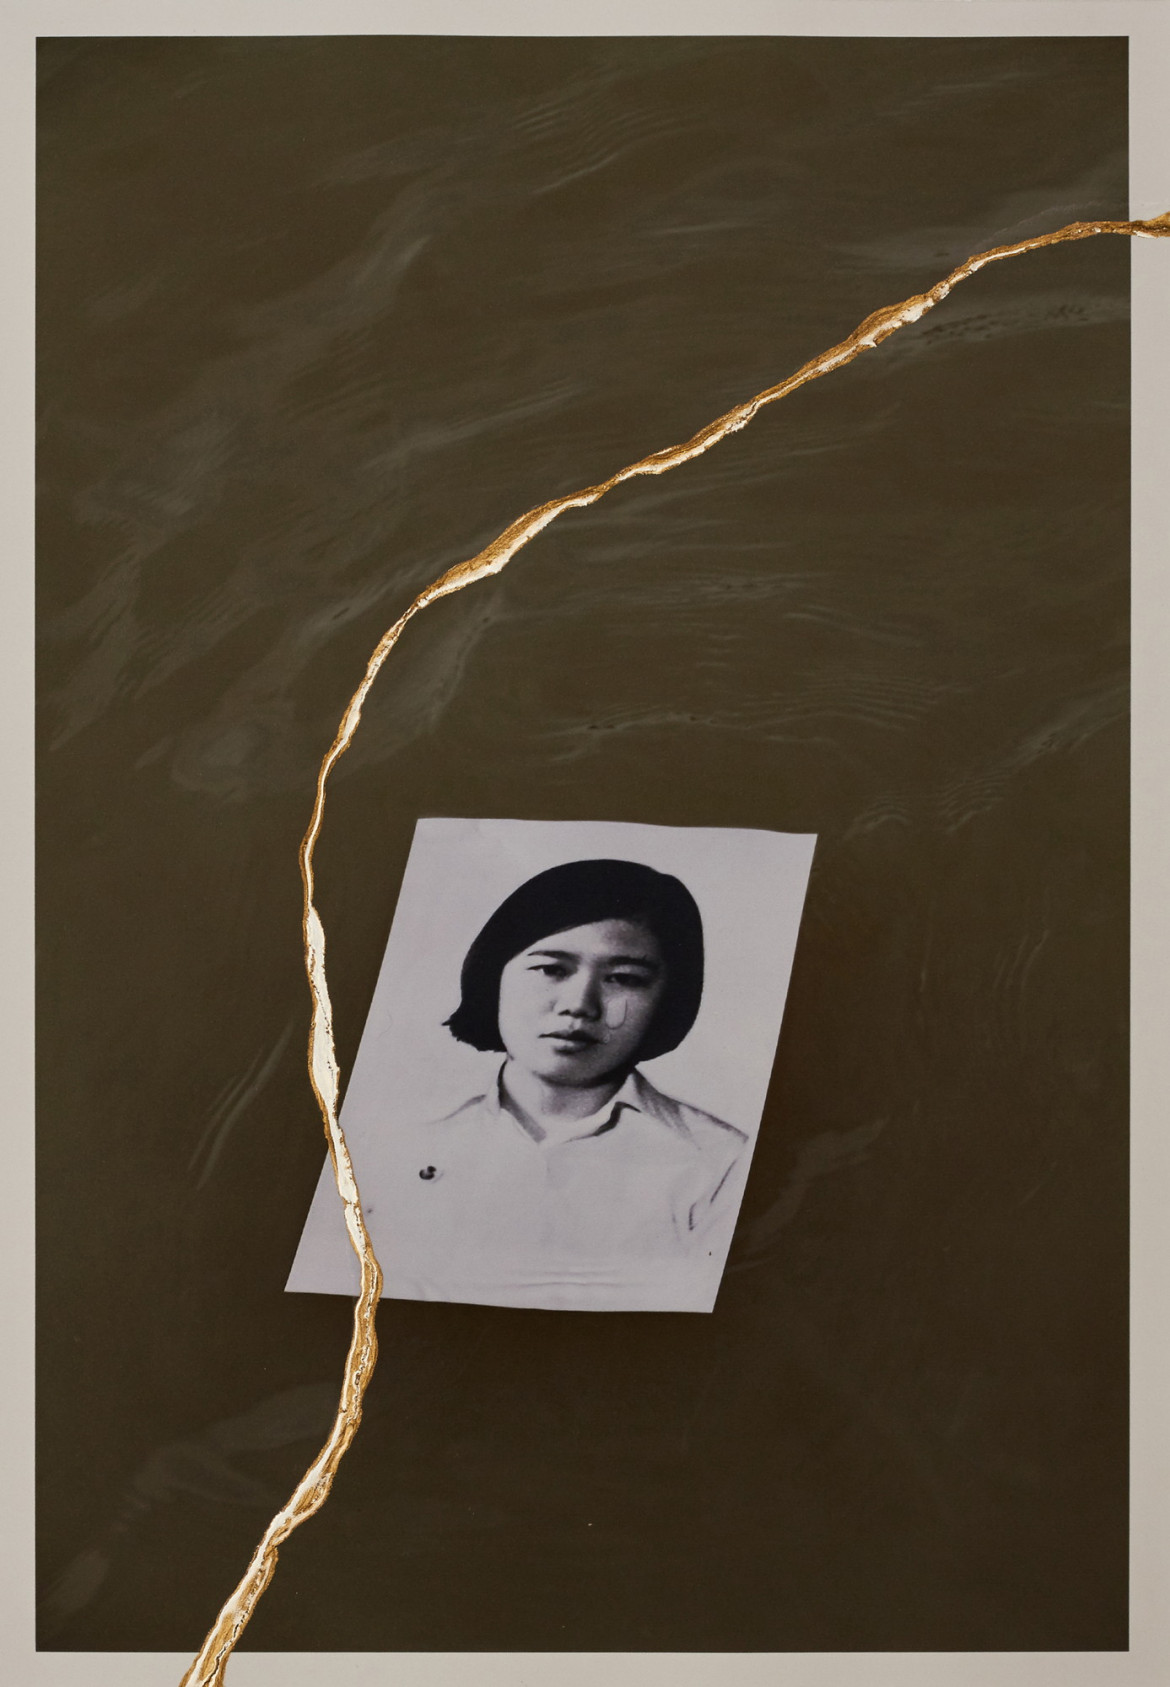 fot. Charinthorn Rachurutchata, z cyklu "The Will to Remember"



<br><br>

Zdjęcie Wimonwana Rungthongbaisuri, jednego ze studentów zabitych podczas masakry 6 października 1976 r., w rzece Chao Phraya. Wielu studentów zostało zmuszonych do wycofania się do rzeki i przepłynięcia jej. Niektórzy studenci zostali zastrzeleni w rzece przez łodzie policyjne, inni utonęli. 

<br><br>

W projekcie zestawiono archiwalne zdjęcia masakry studentów na Uniwersytecie Thammasat w Bangkoku z 6 października 1976 r. z fotografiami, które Rachurutchata wykonał podczas protestów w Tajlandii w latach 2020-2022, aby zrozumieć przyczyny współczesnych protestów. Fotograf naśladuje japońską sztukę kintsugi, rozdzierając zdjęcia, a następnie naprawiając je lakierem i sproszkowanym złotem. Rachurutchata wykorzystuje kintsugi, by symbolizować przemianę traumy w nadzieję na lepszą przyszłość.